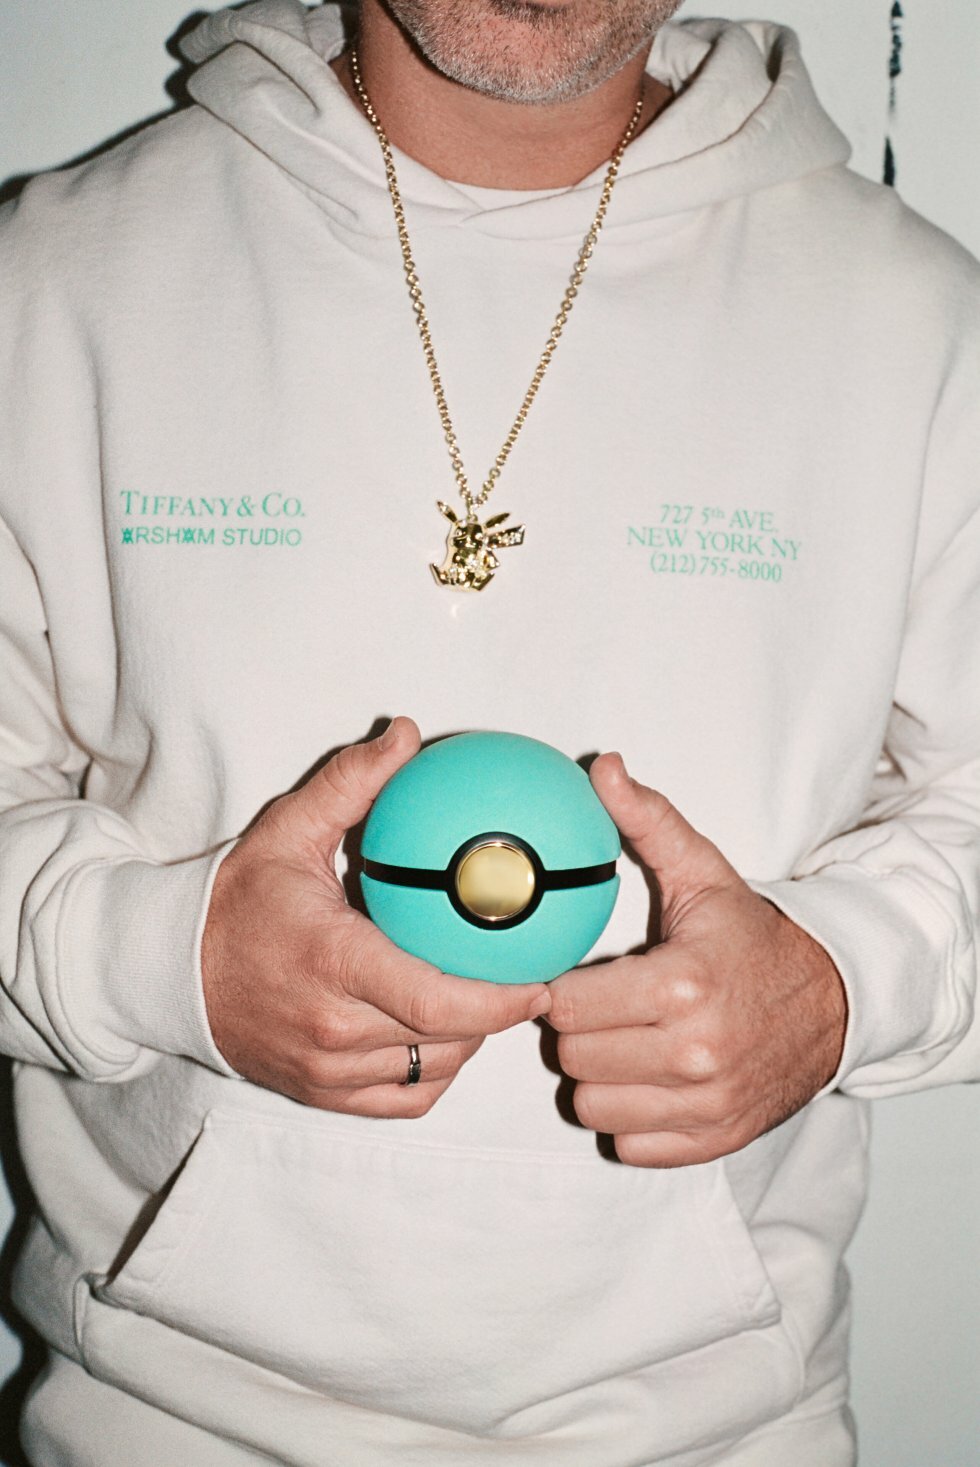 Daniel Arsham har lavet en vanvittig Pokémon smykkeserie for Tiffany